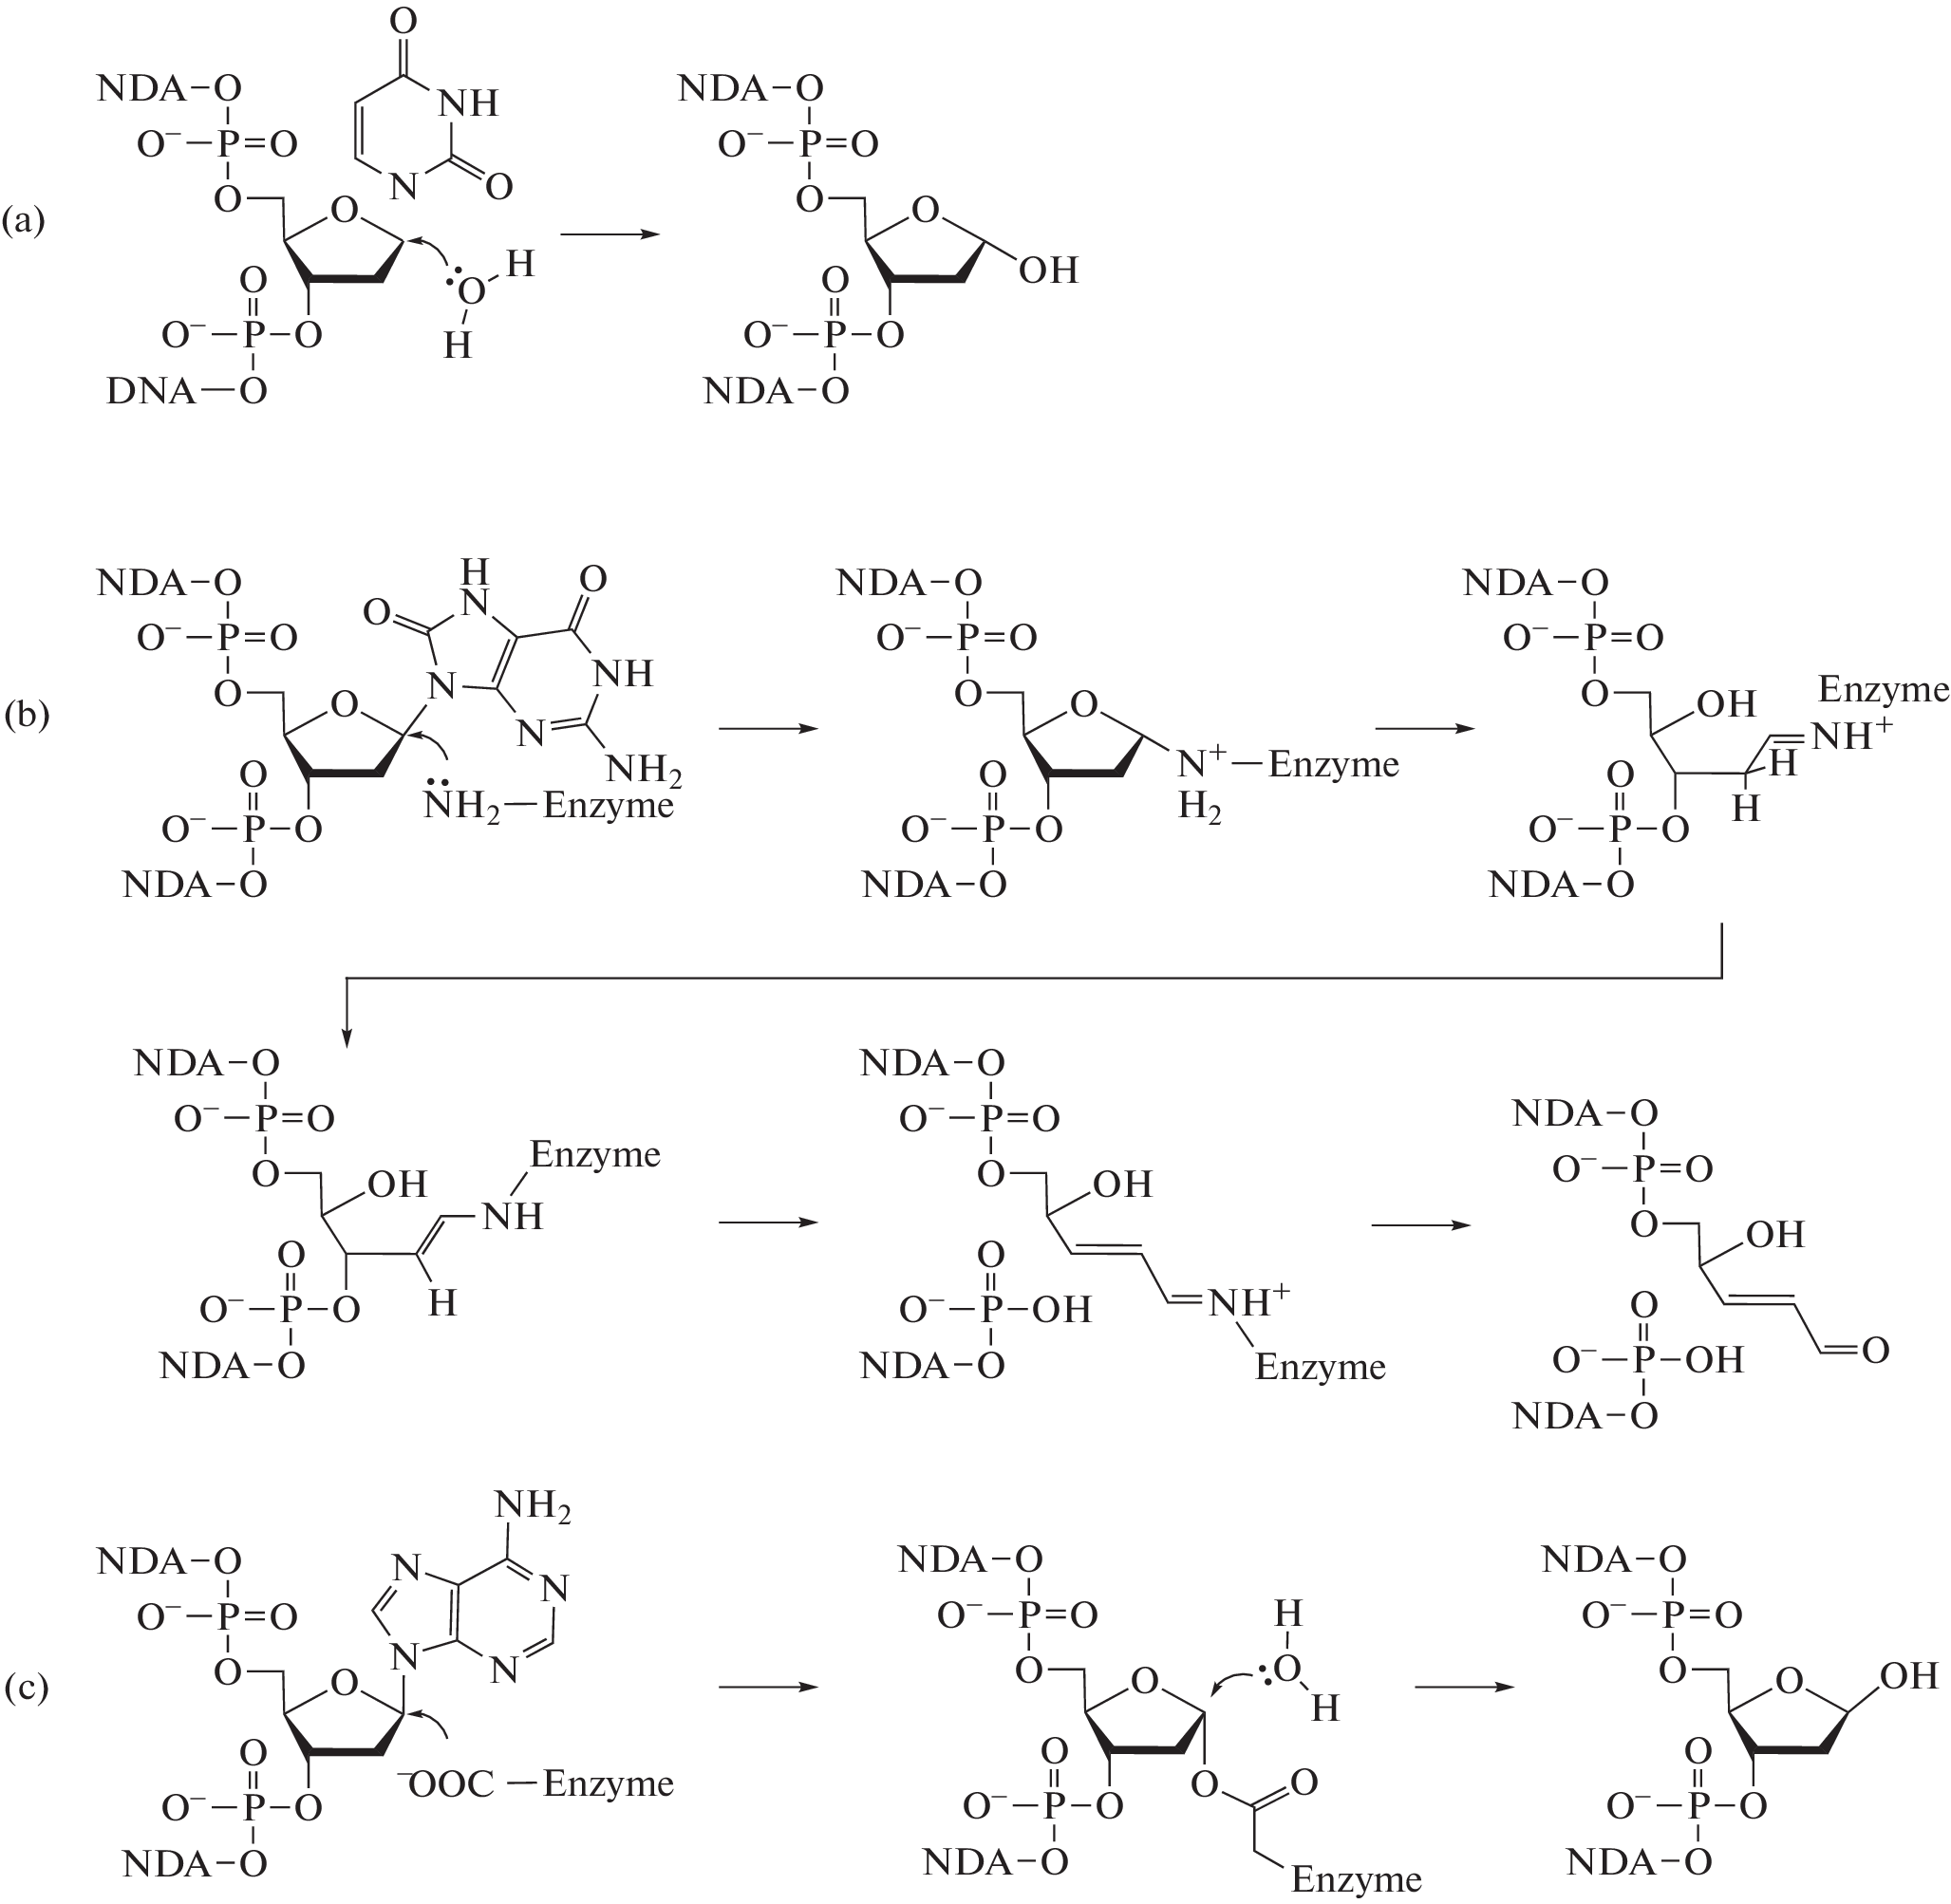 Strategies of N-Glycosidic Bond Cleavage by DNA Repair Enzymes